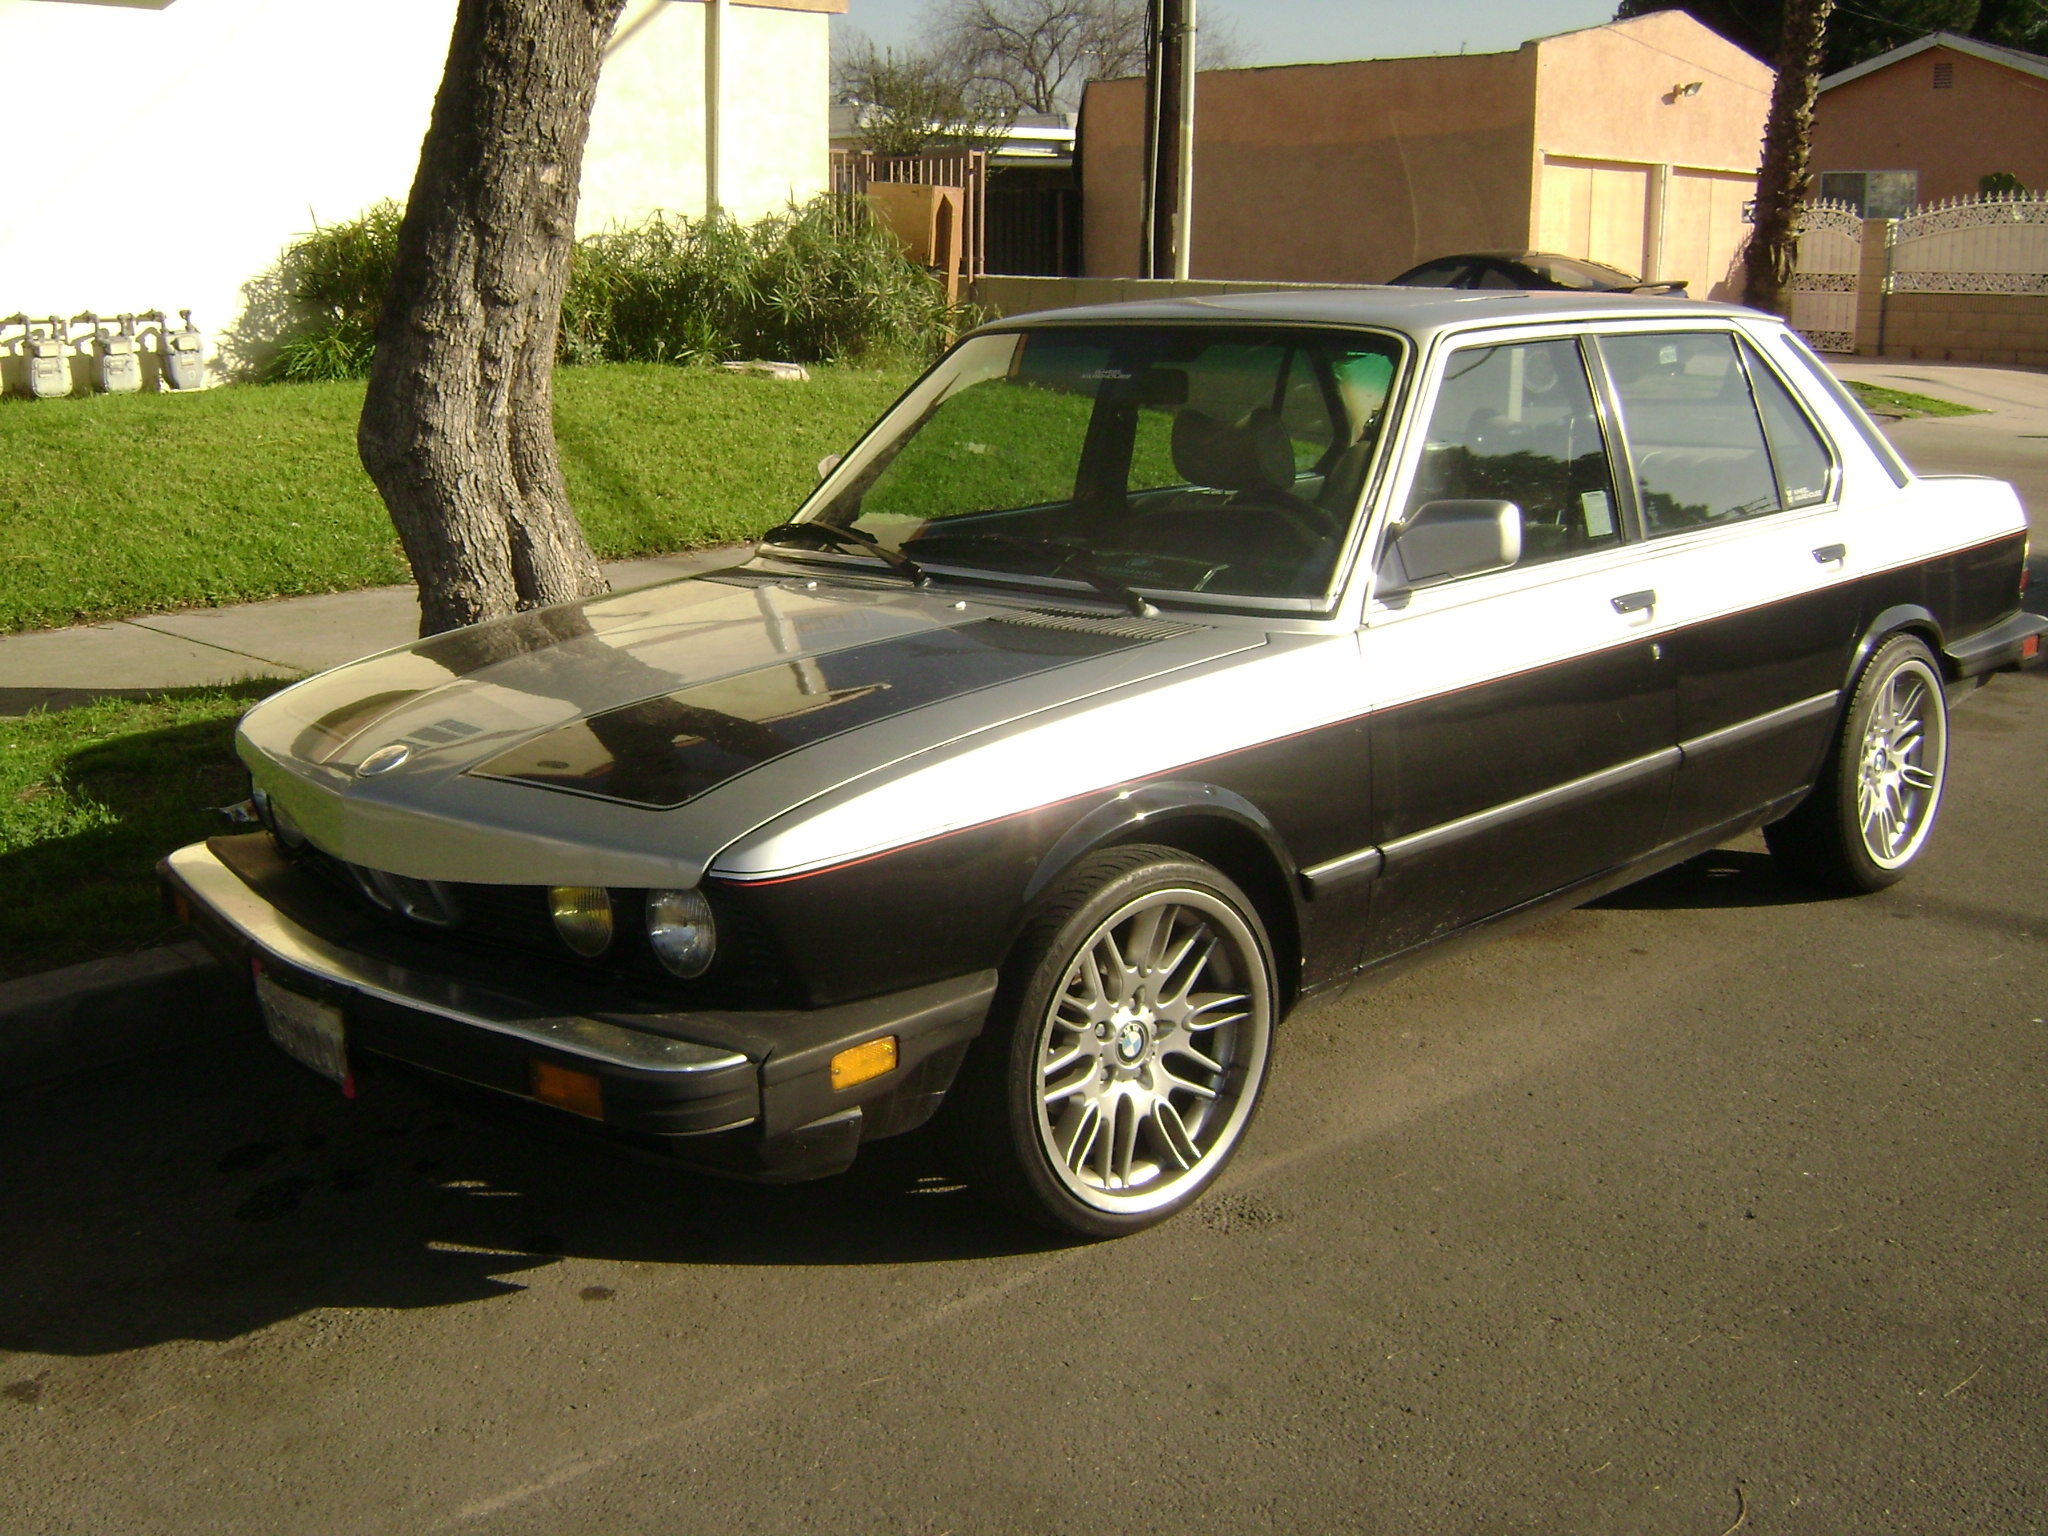 82' BMW 528e, M5 rims - $2200. I came across this 528e on craigslist,